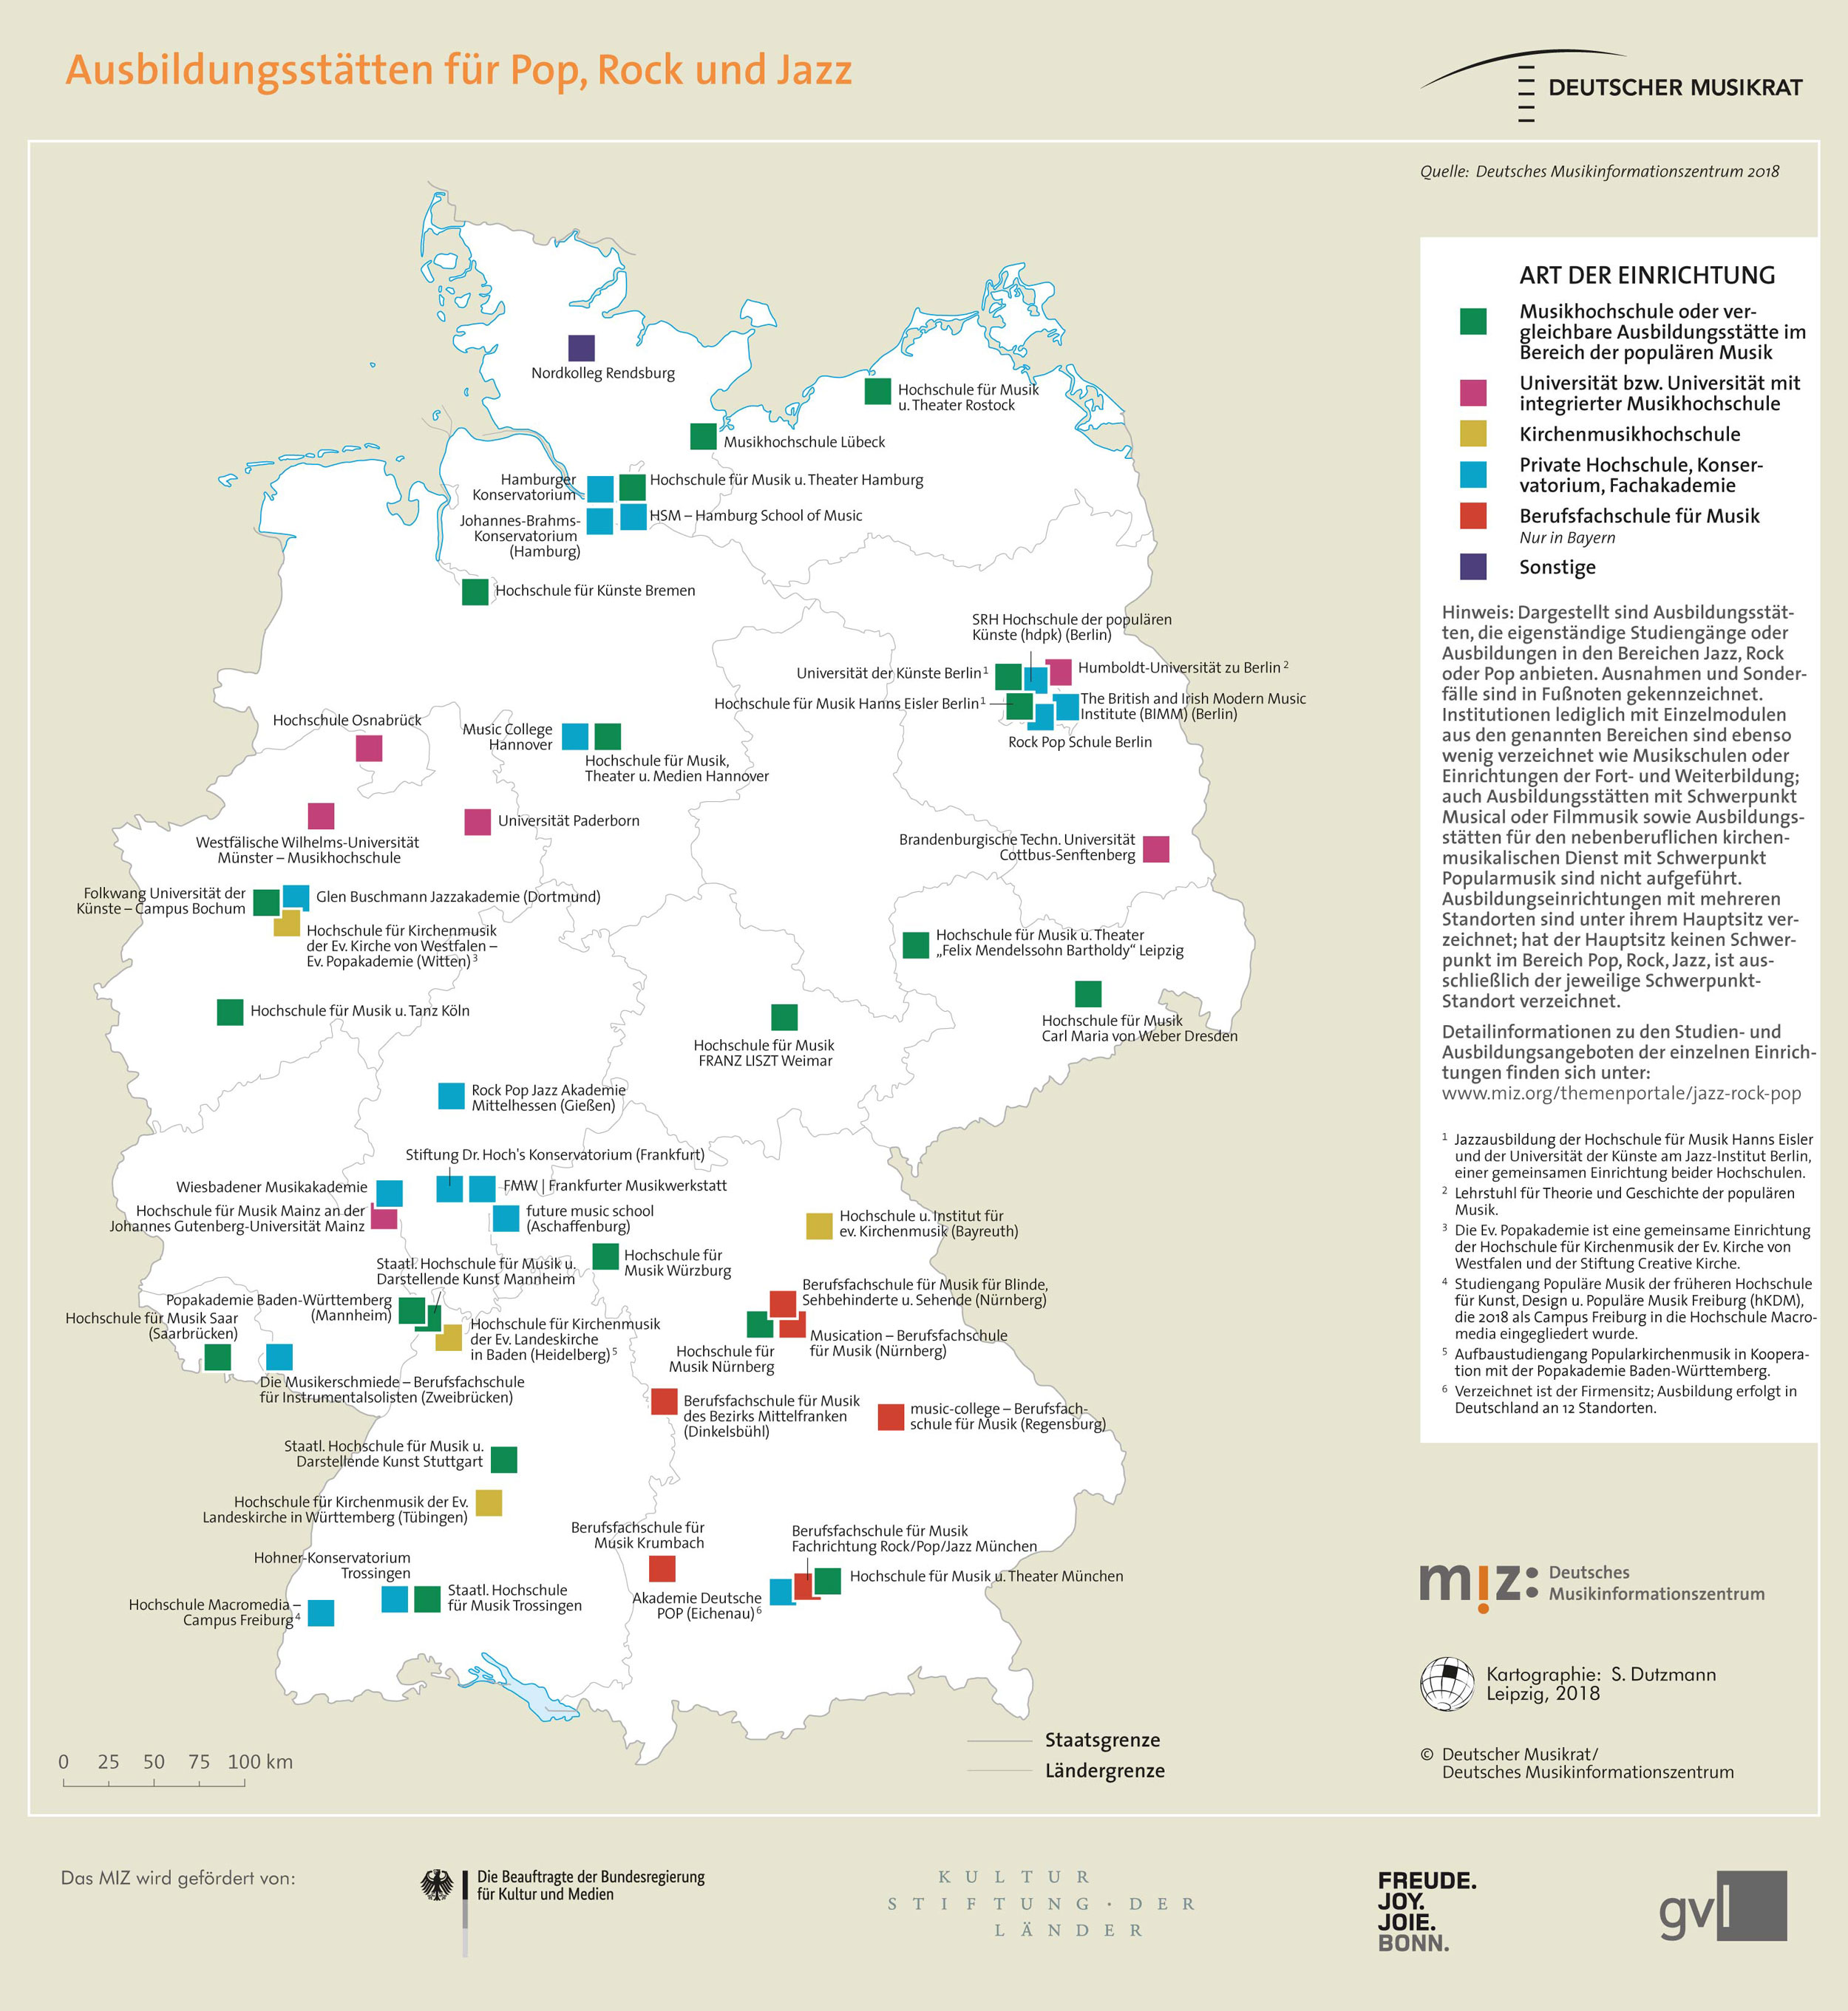 Topografie: Ausbildungsstätten für Pop, Rock und Jazz in Deutschland.